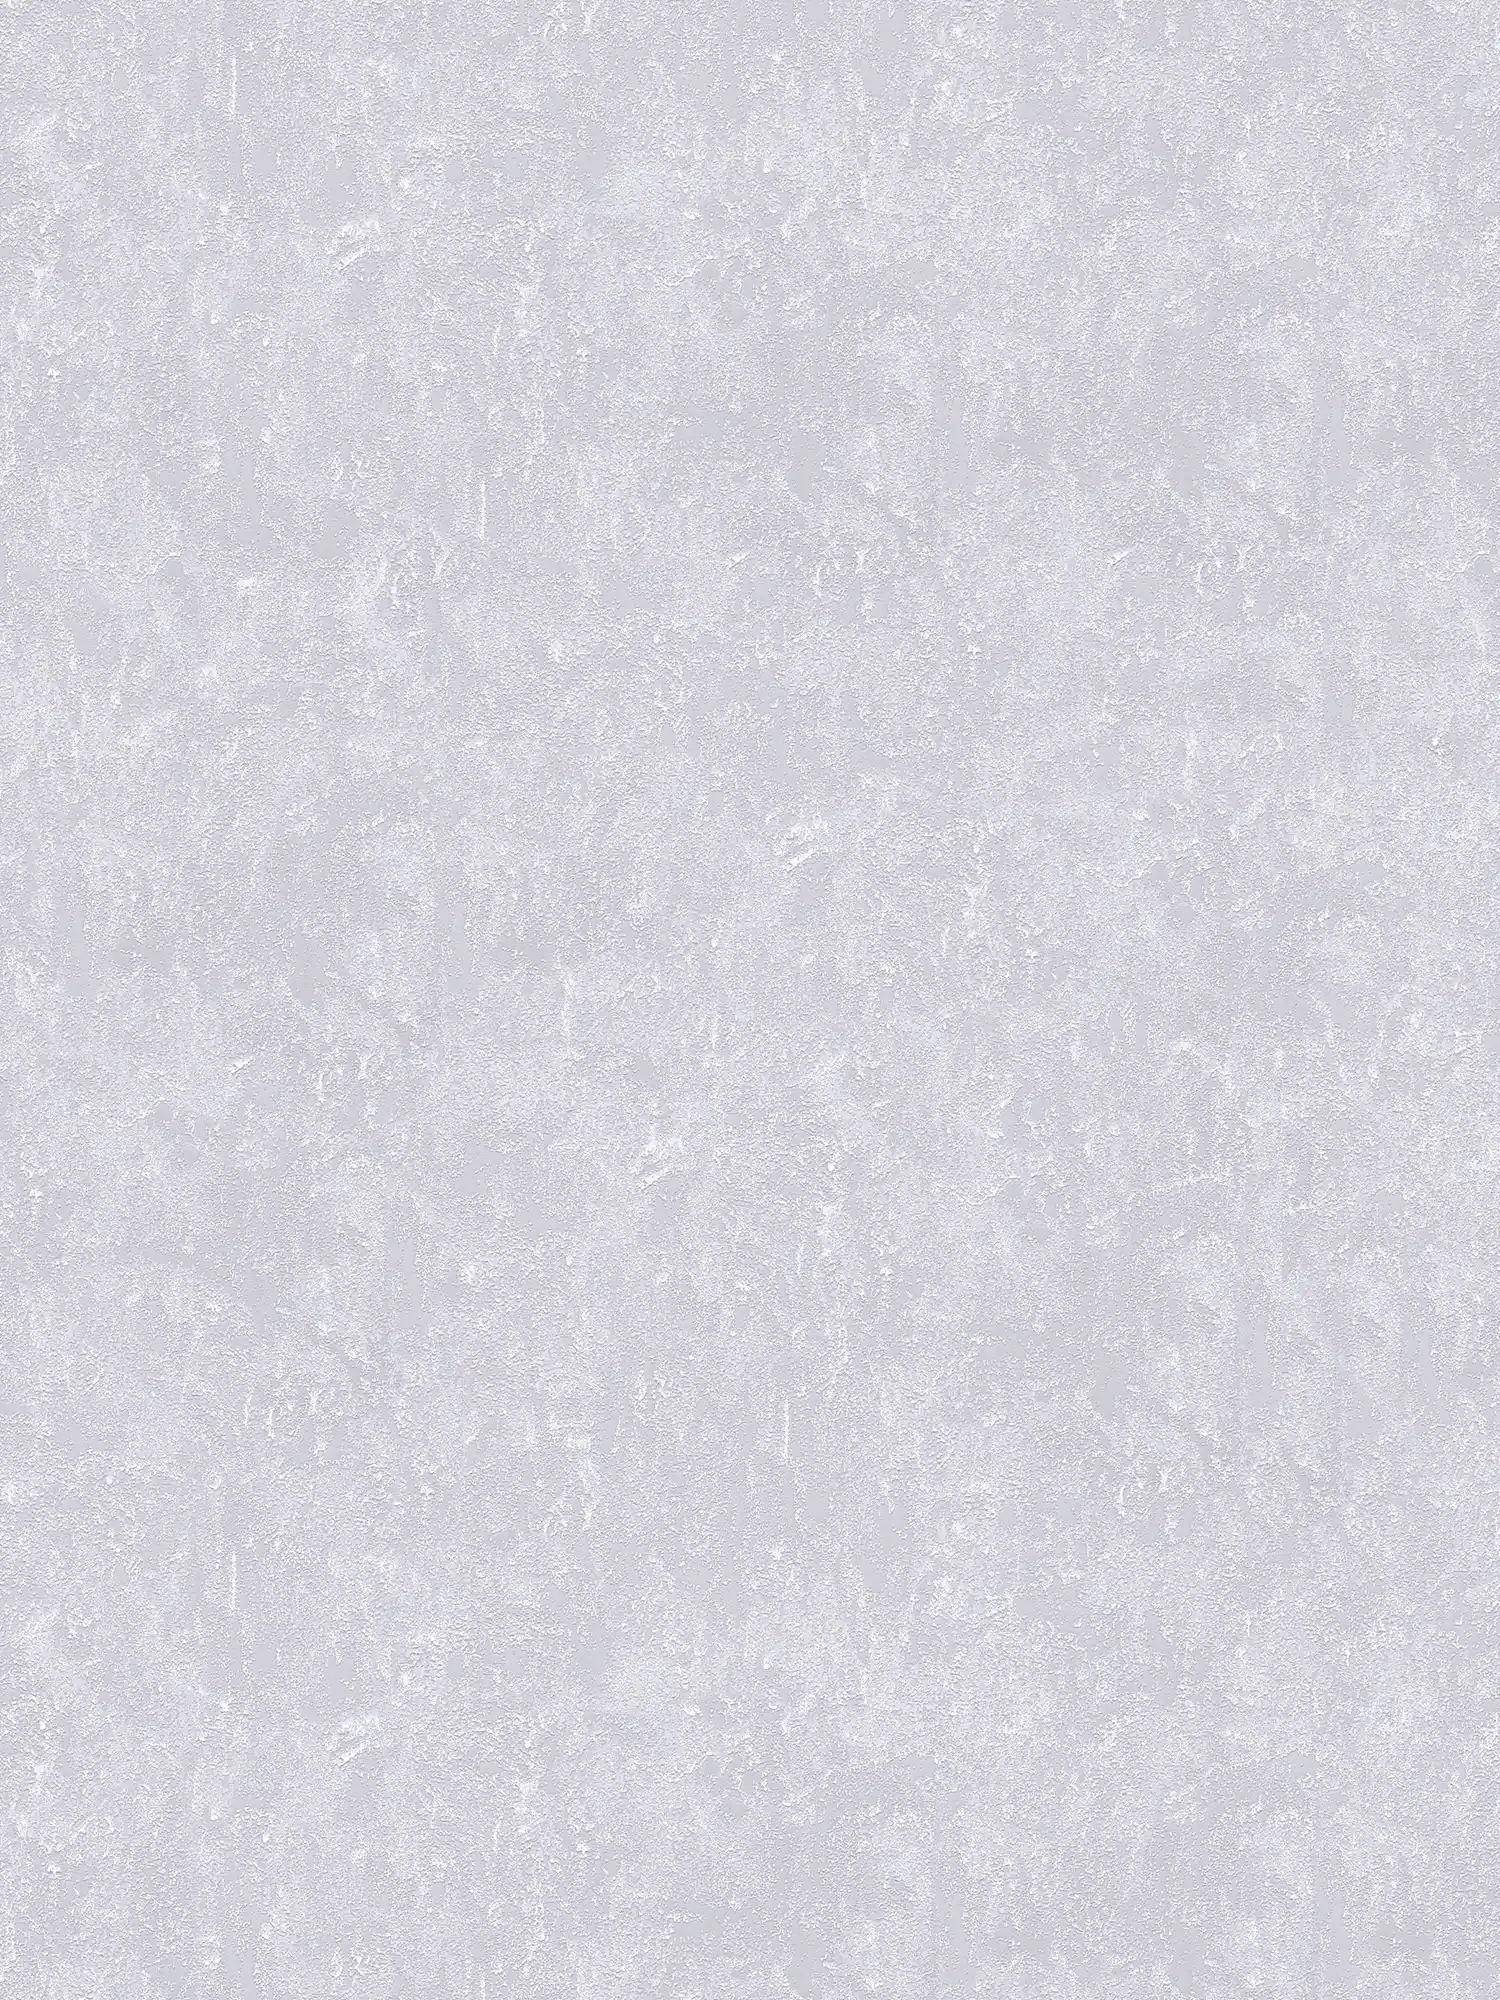         Metallic Tapete Grau glänzend mit Strukturprägung
    